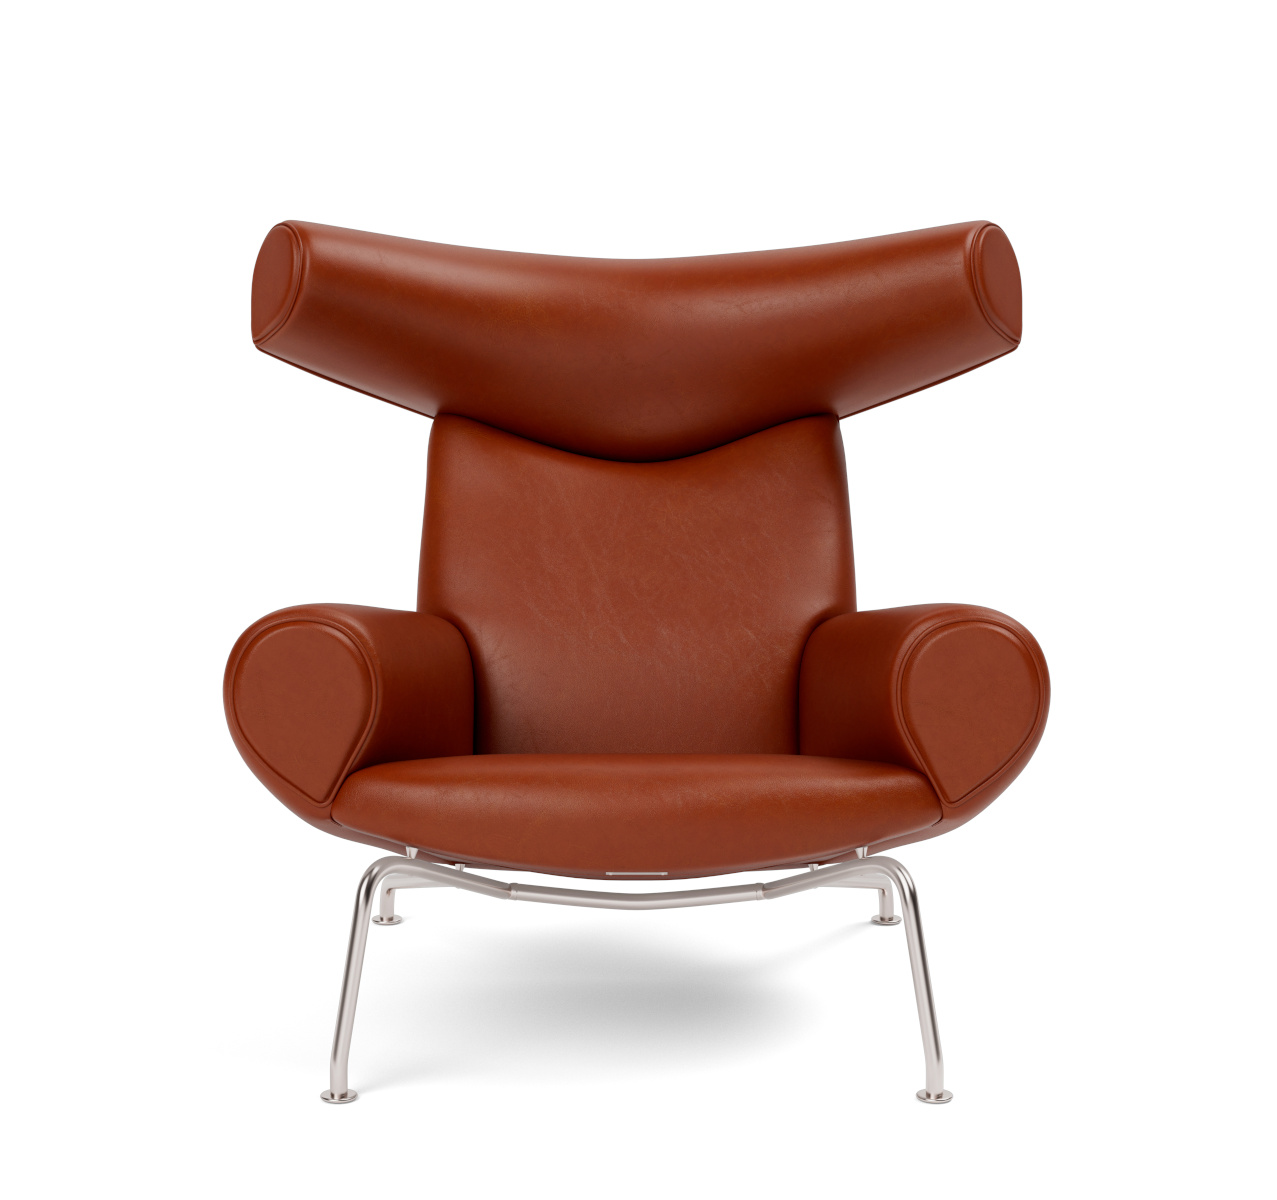 Wegner Ox Chair, brushed steel / leder cera 905 russet brown